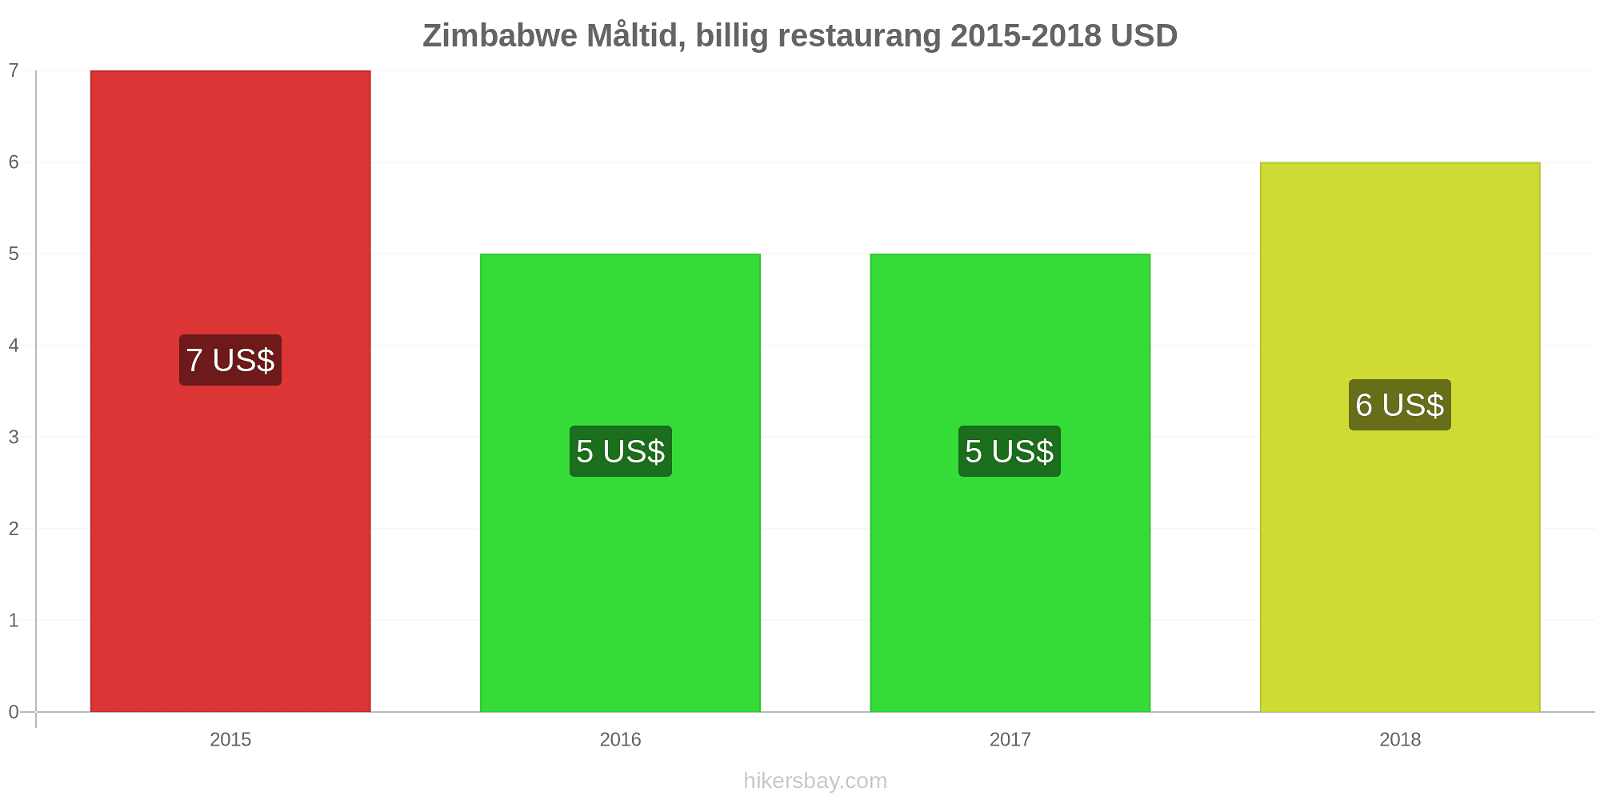 Zimbabwe prisändringar Måltid i en billig restaurang hikersbay.com